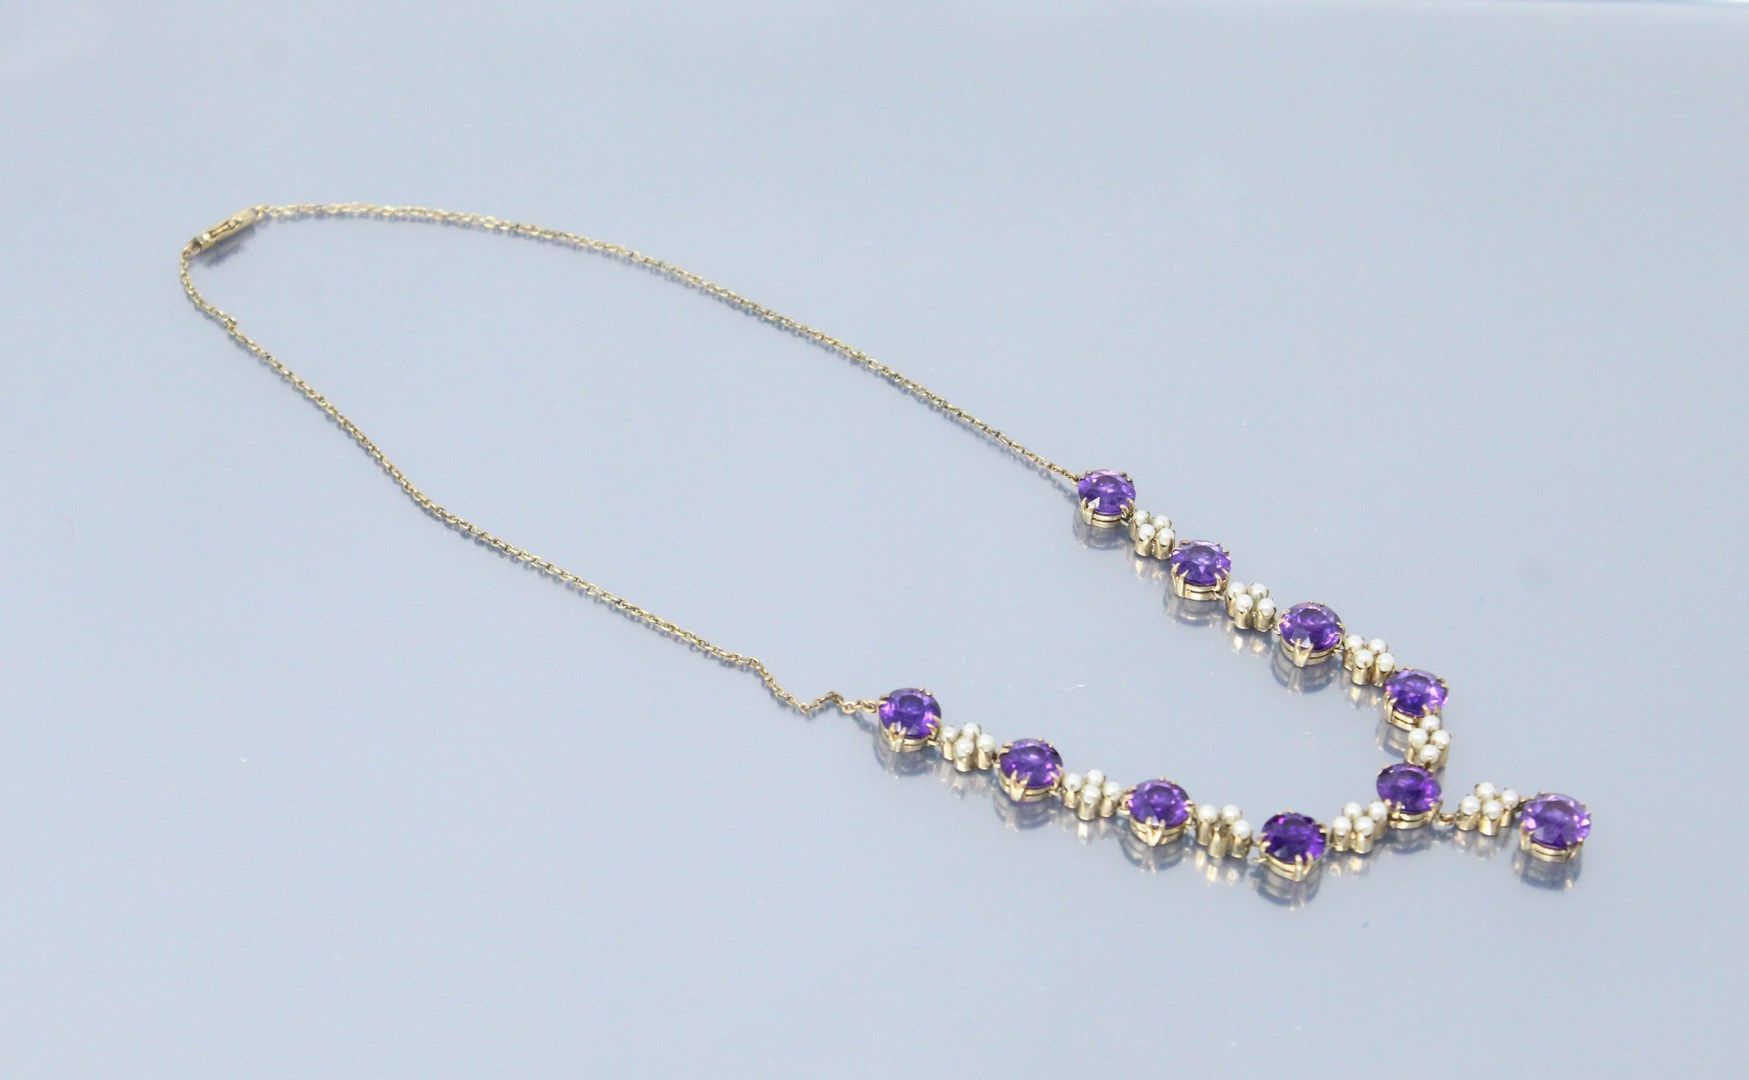 Null 鎏金金属项链，装饰有十个圆形紫水晶，每个紫水晶之间有四颗珍珠。(小姐)

项链尺寸：41.5厘米。